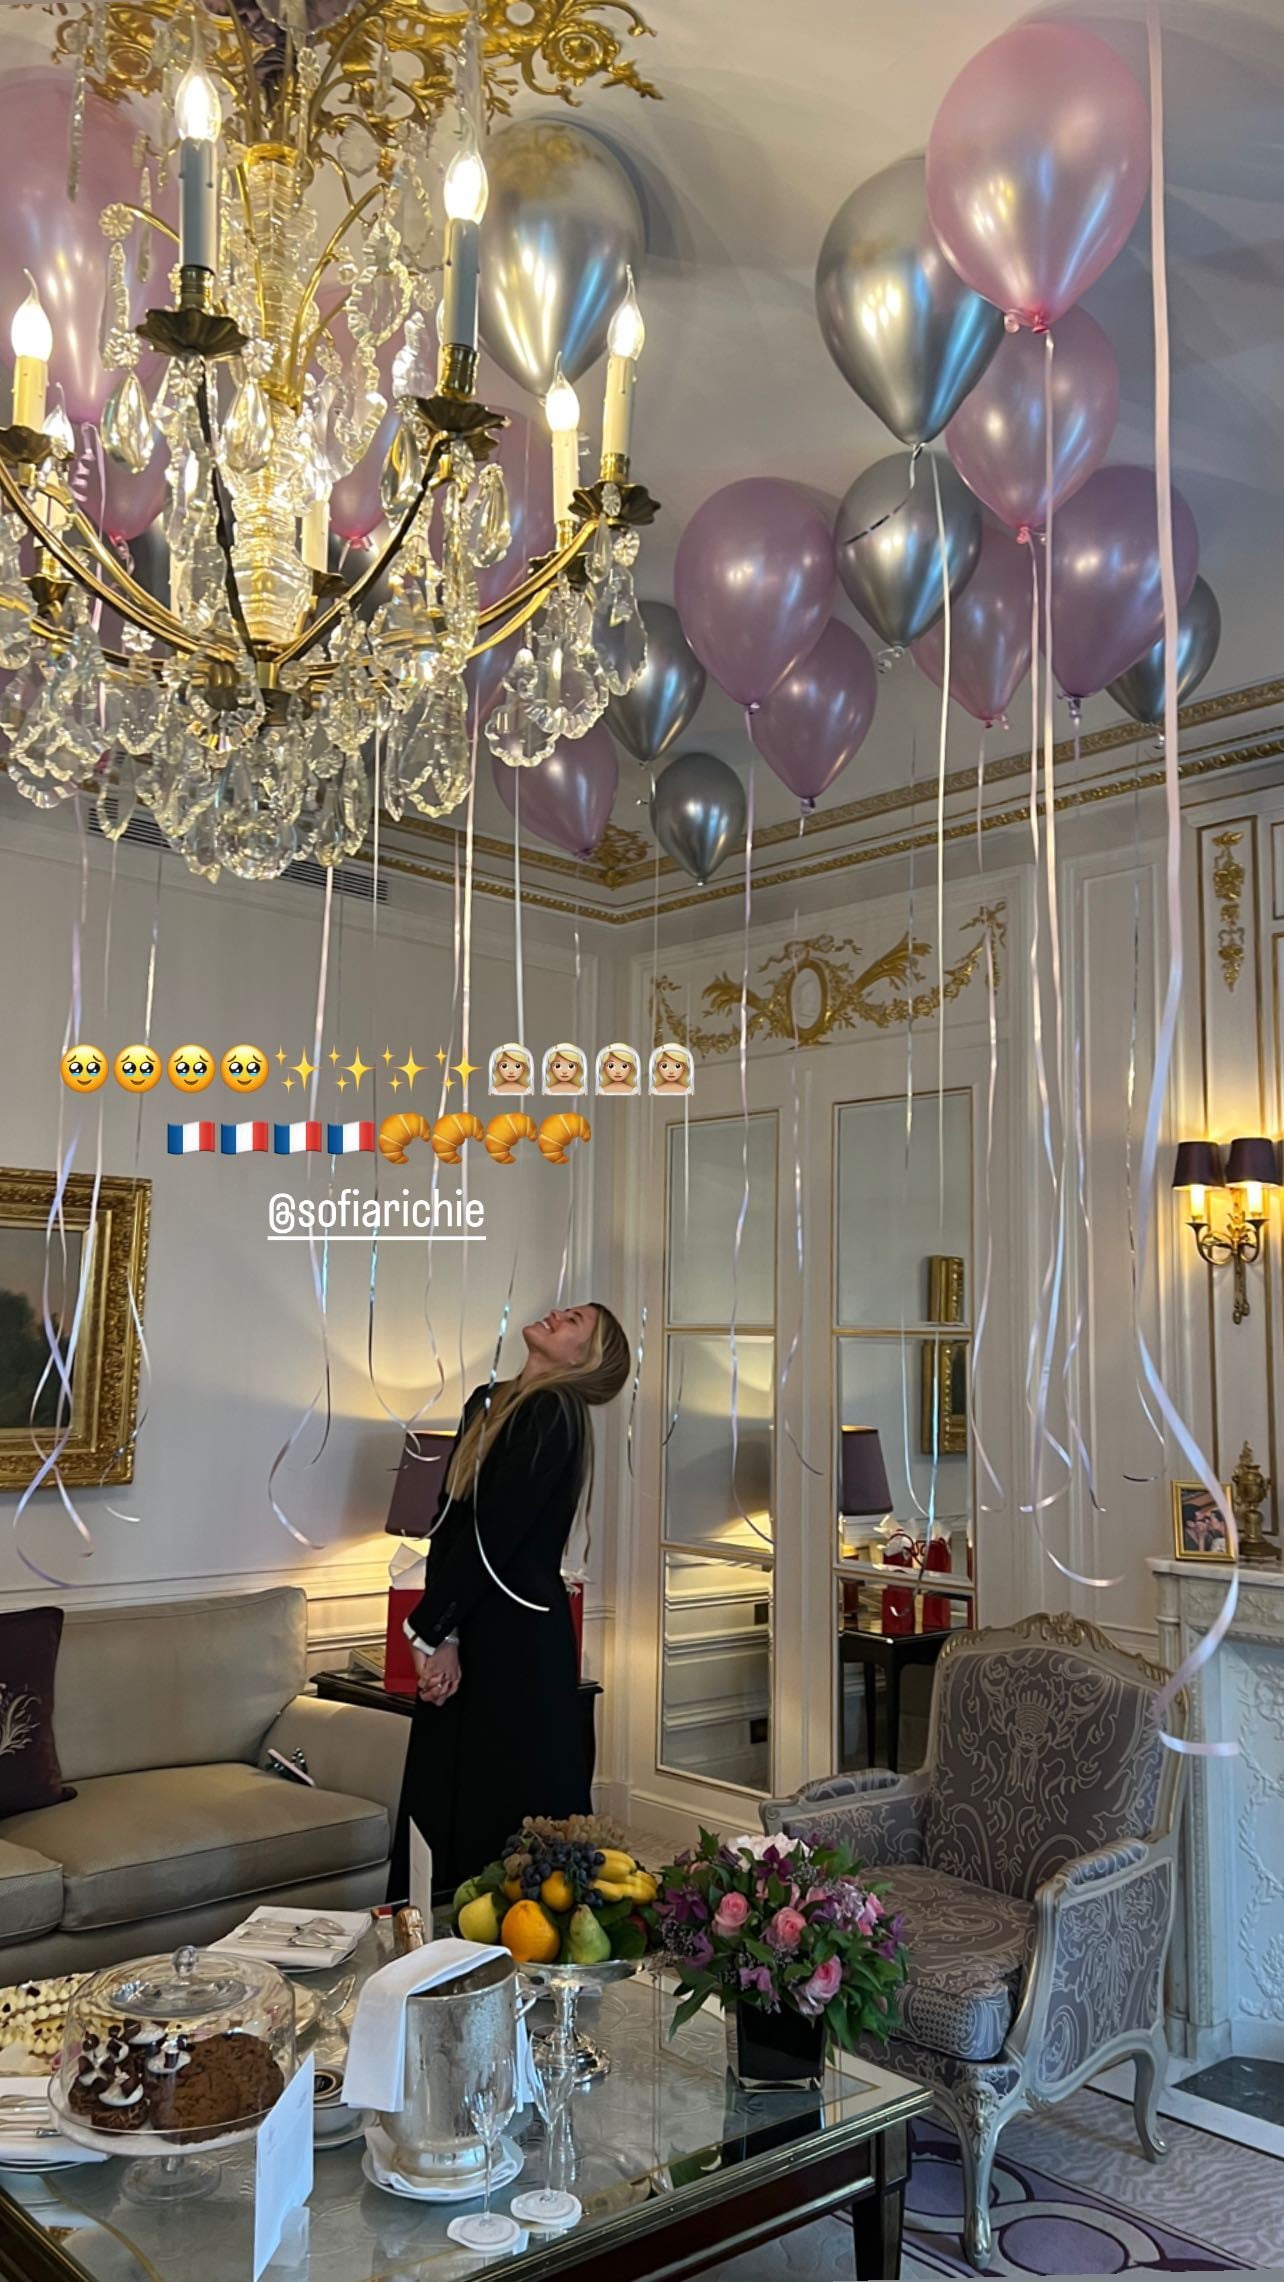 Sofia Richie's Bachelorette Party in Paris, Photos